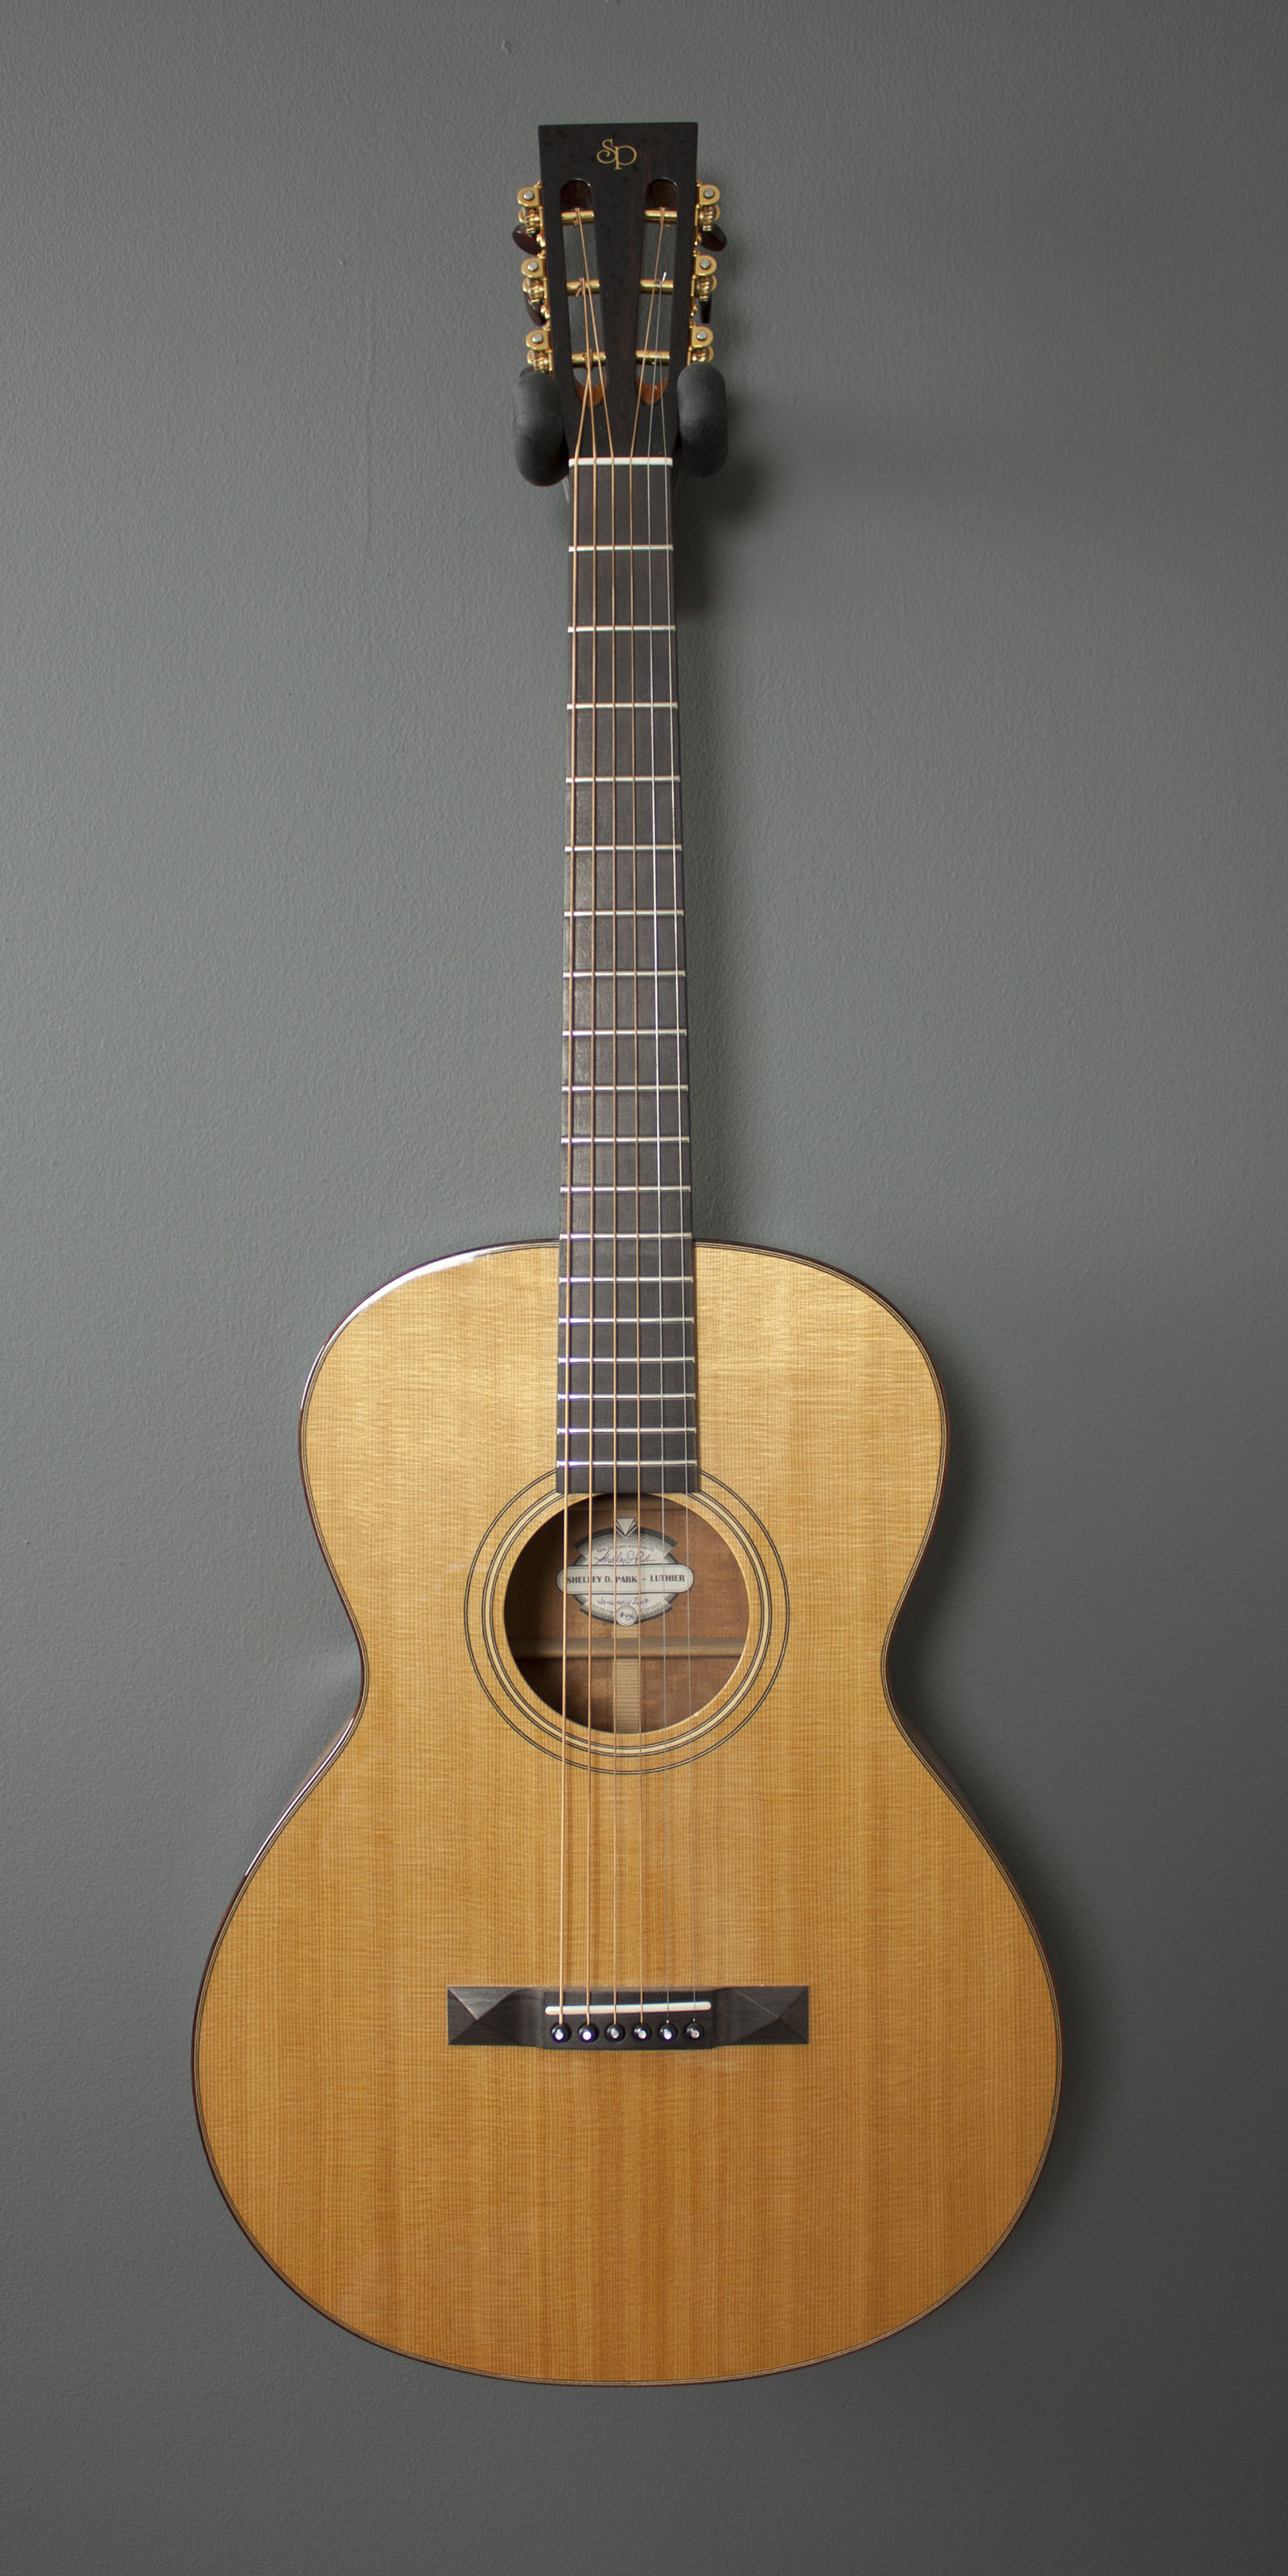 Vega guitar serial numbers